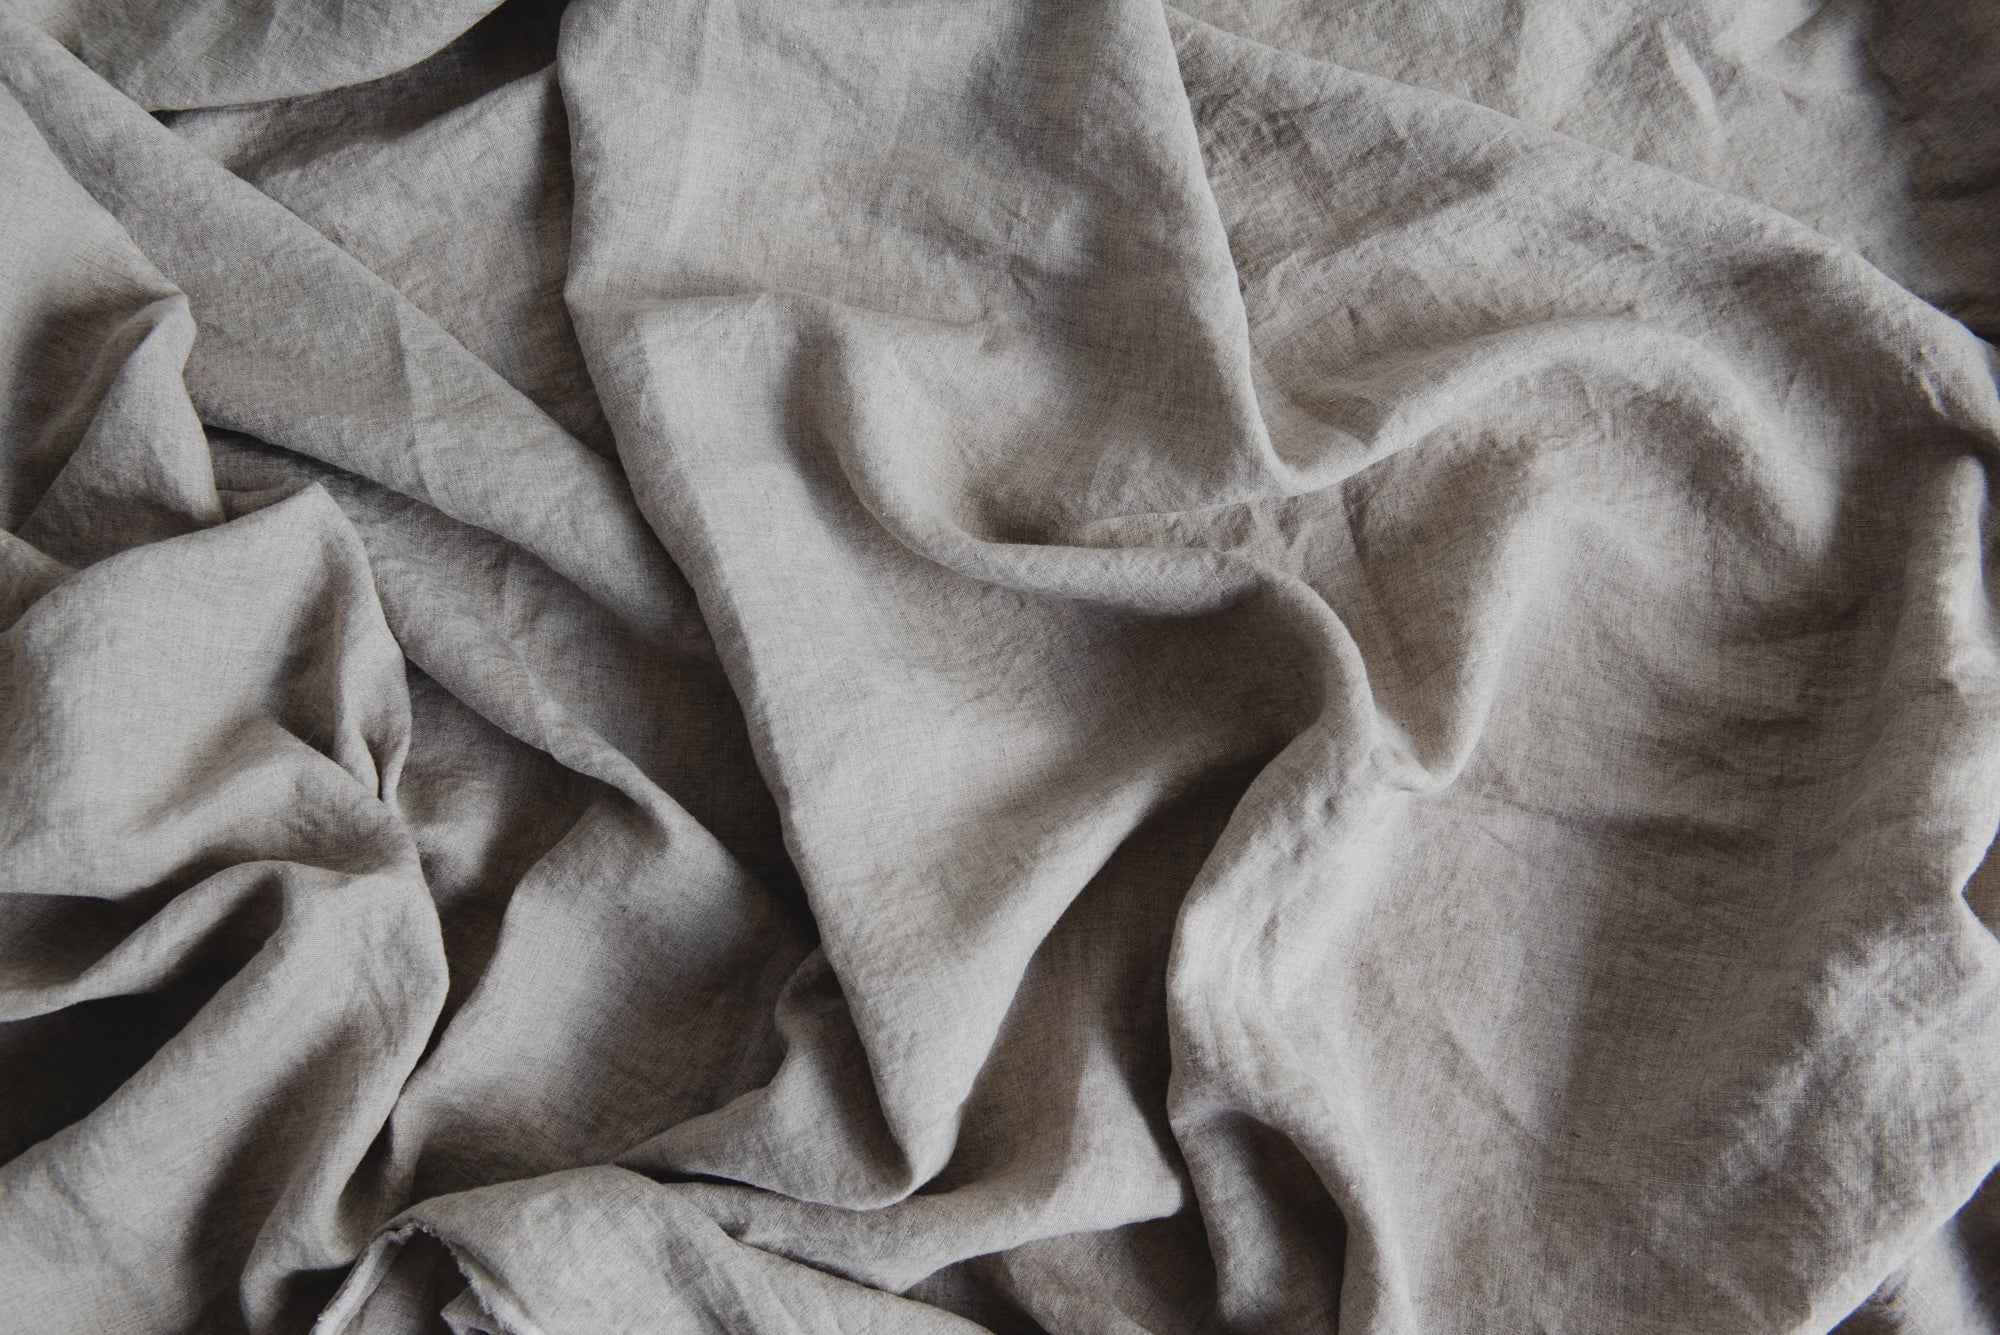 Natural Undyed Linen Fabric - Light to Medium Weight